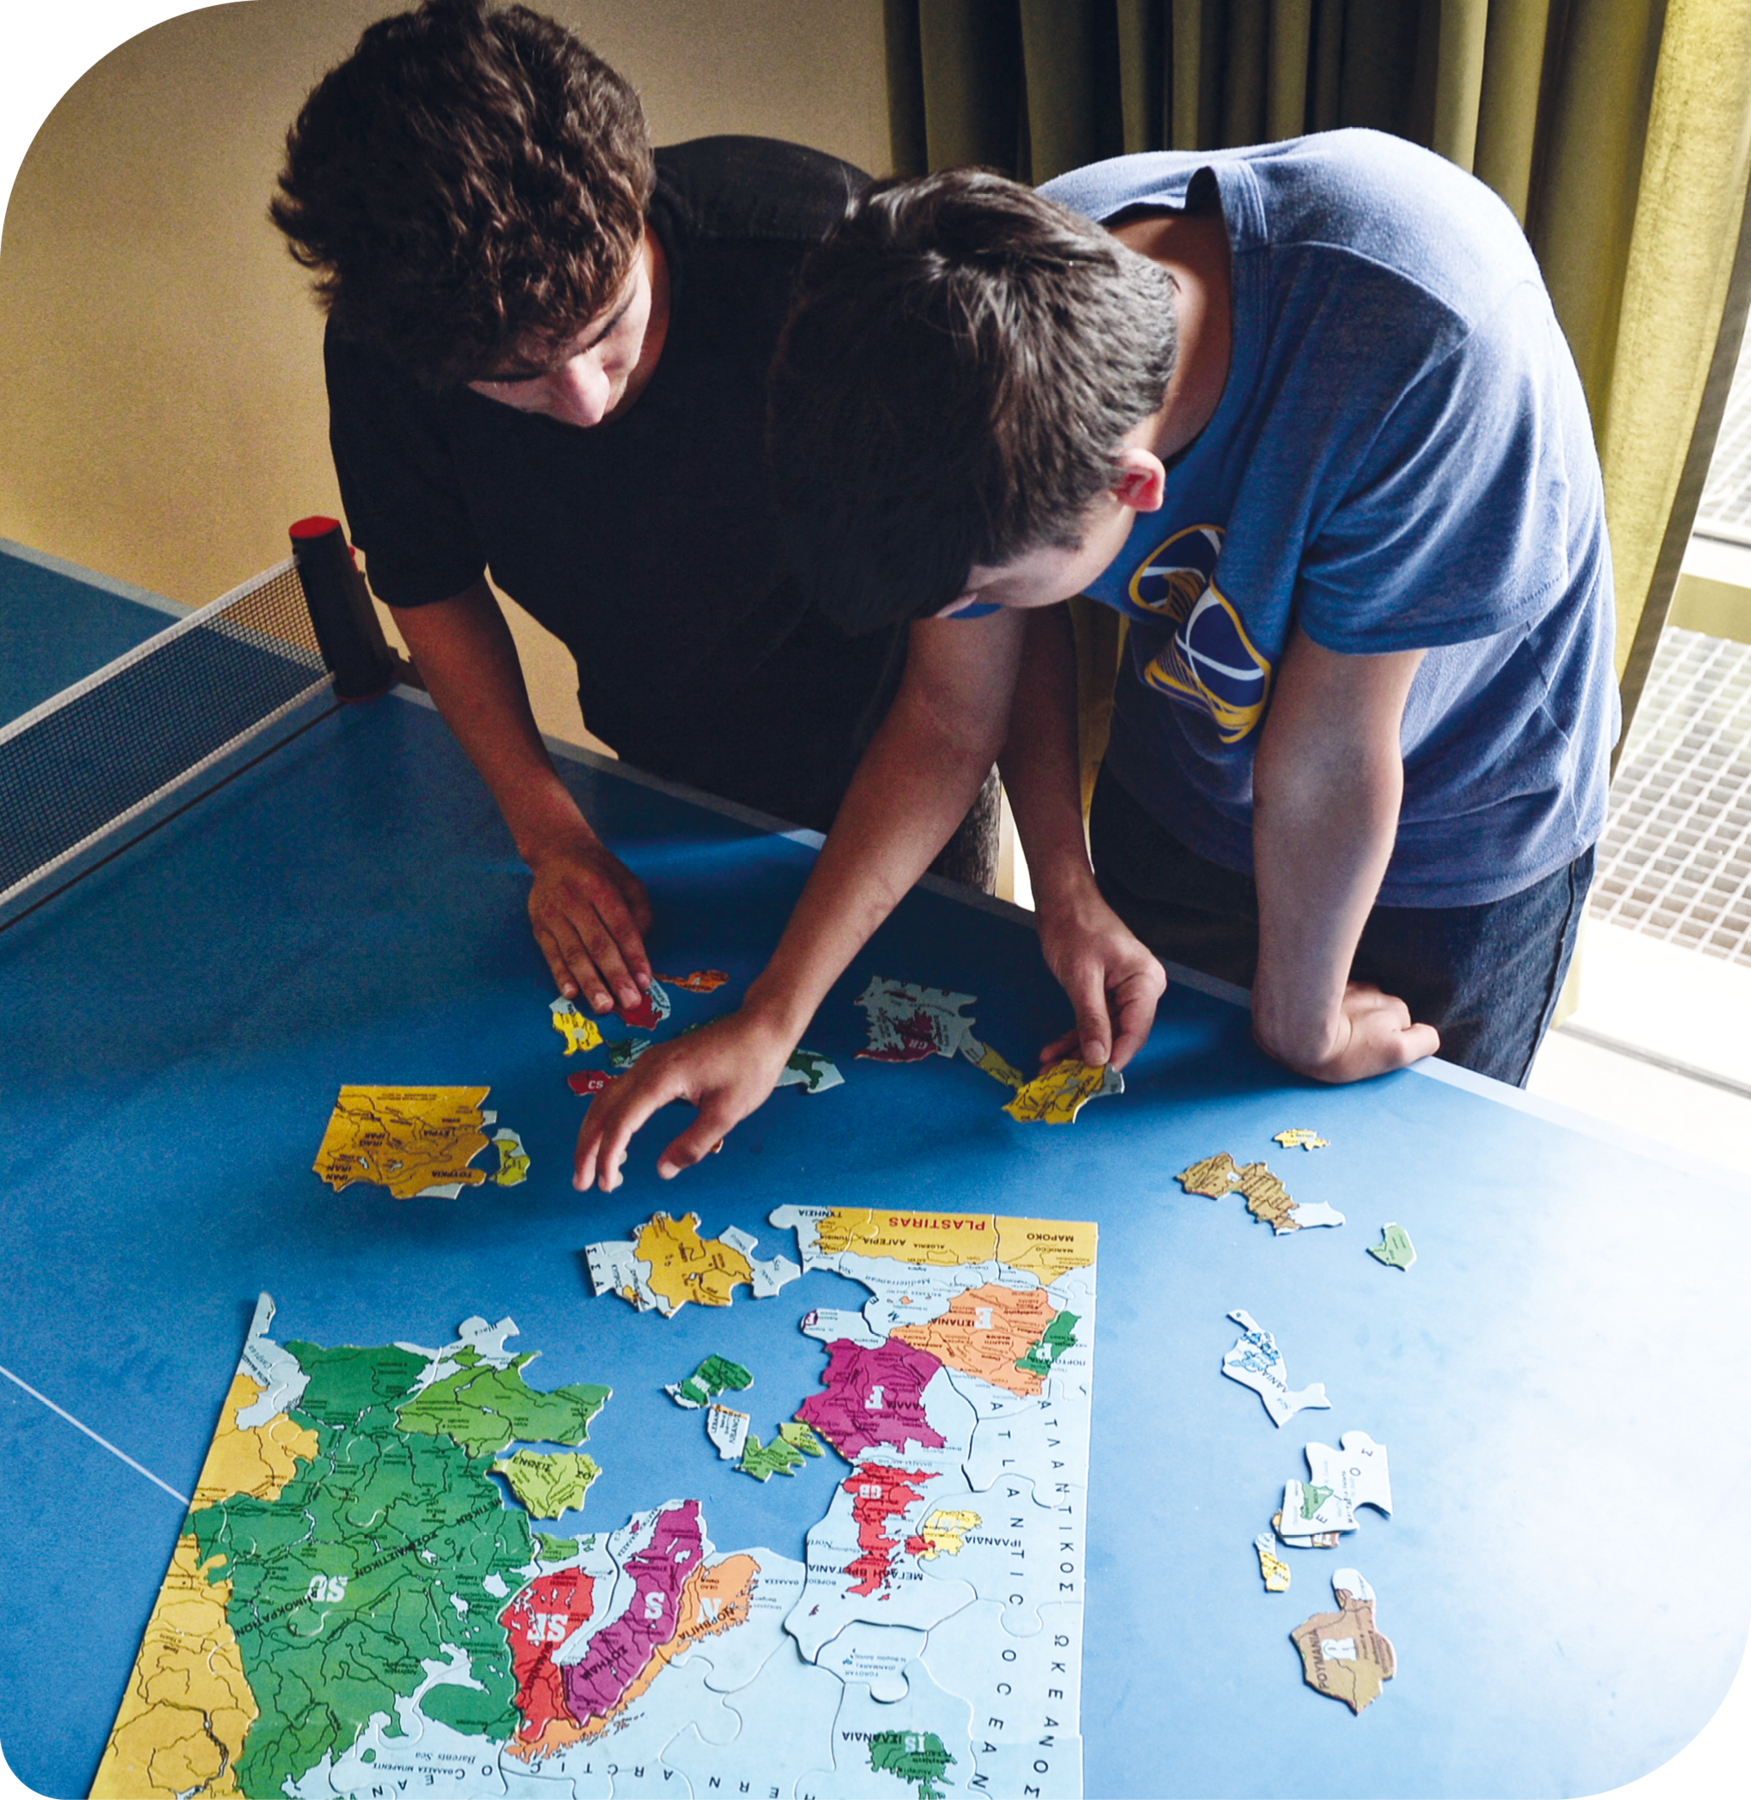 Fotografia. Dois rapazes em pé montando um quebra-cabeças com a figura de um mapa. Eles posicionam grupos de peças sobre uma mesa de pingue-pongue.